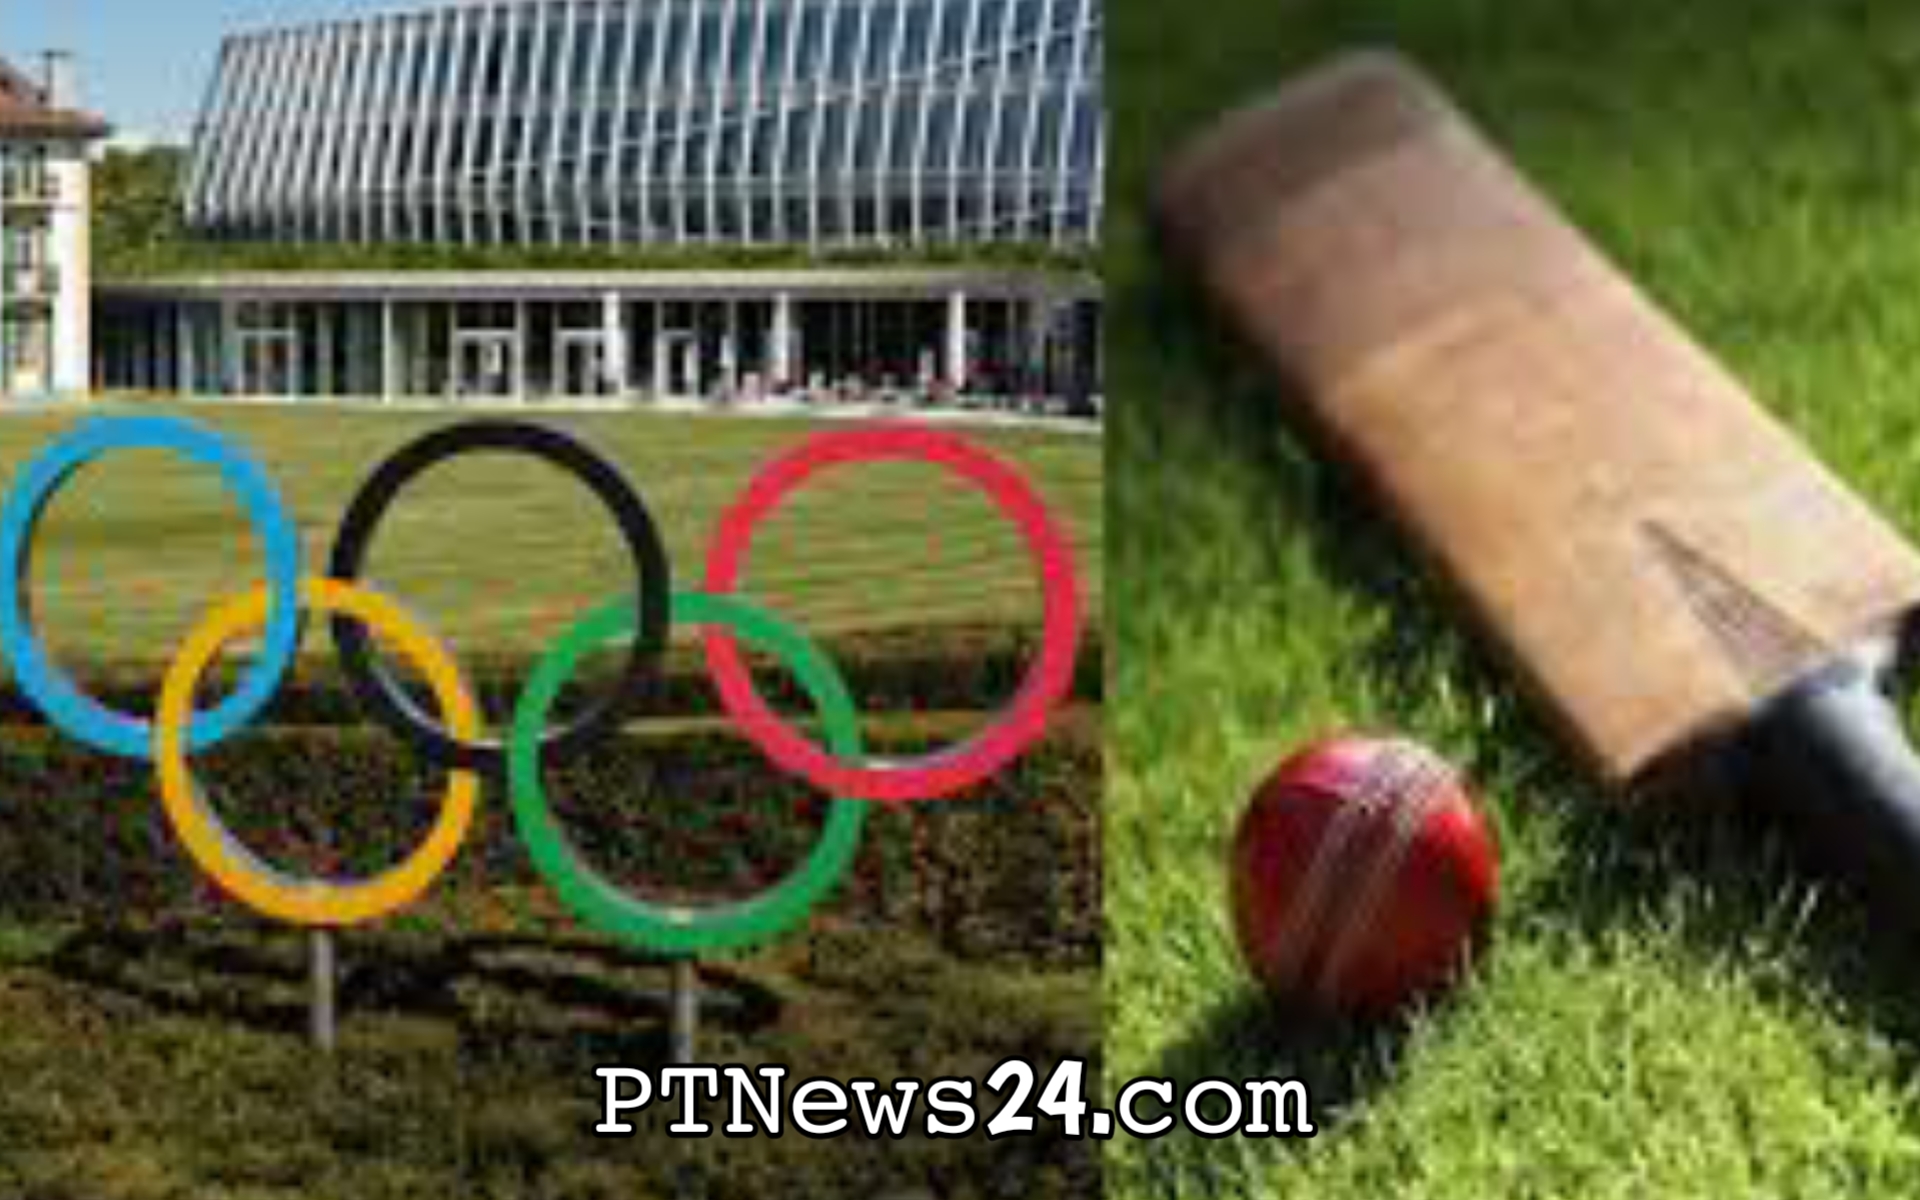 Olympic 2028: 2028 olymic में Cricket को मिलेगा मौका, 2023 में होगी घोषणा |